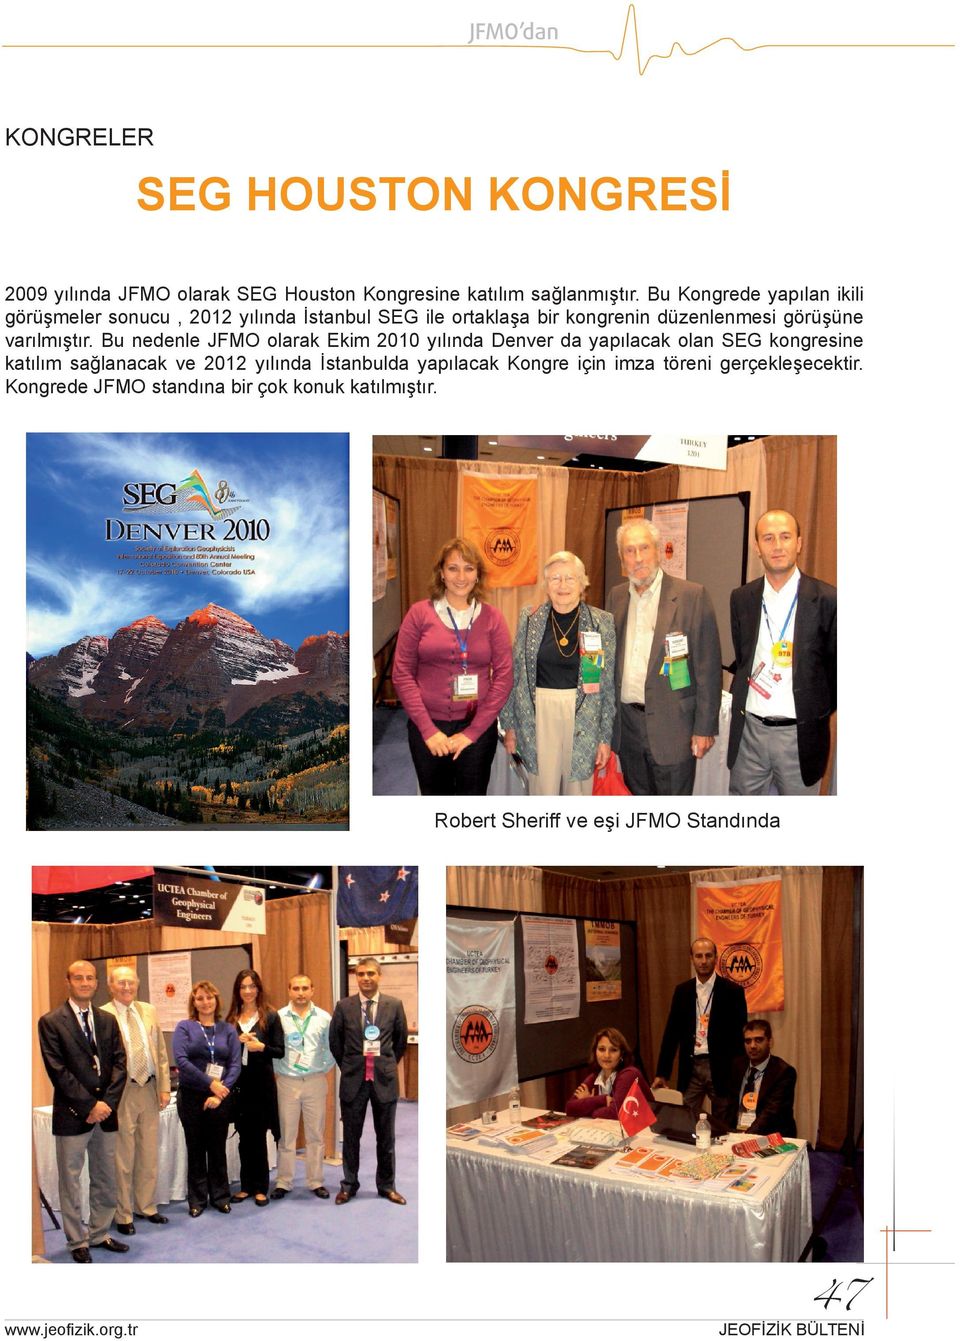 Bu nedenle JFMO olarak Ekim 2010 yılında Denver da yapılacak olan SEG kongresine katılım sağlanacak ve 2012 yılında İstanbulda yapılacak